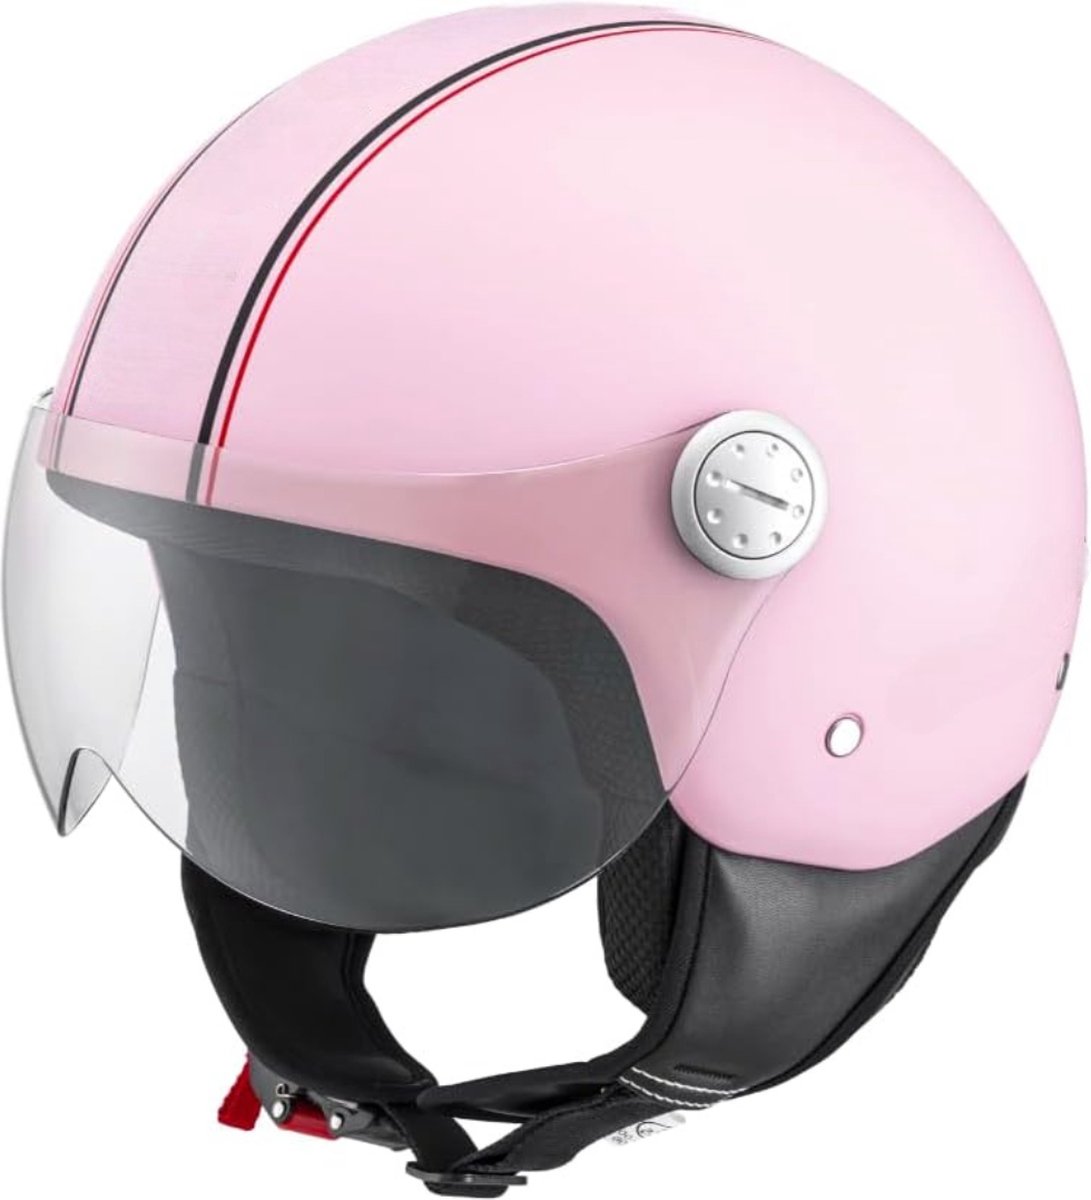 Scooterhelmen voor vrouwen - Snorscooter helm goedgekeurd - Snorfiets helm - scooter helm dames - ‎2XL/MAT ROZE